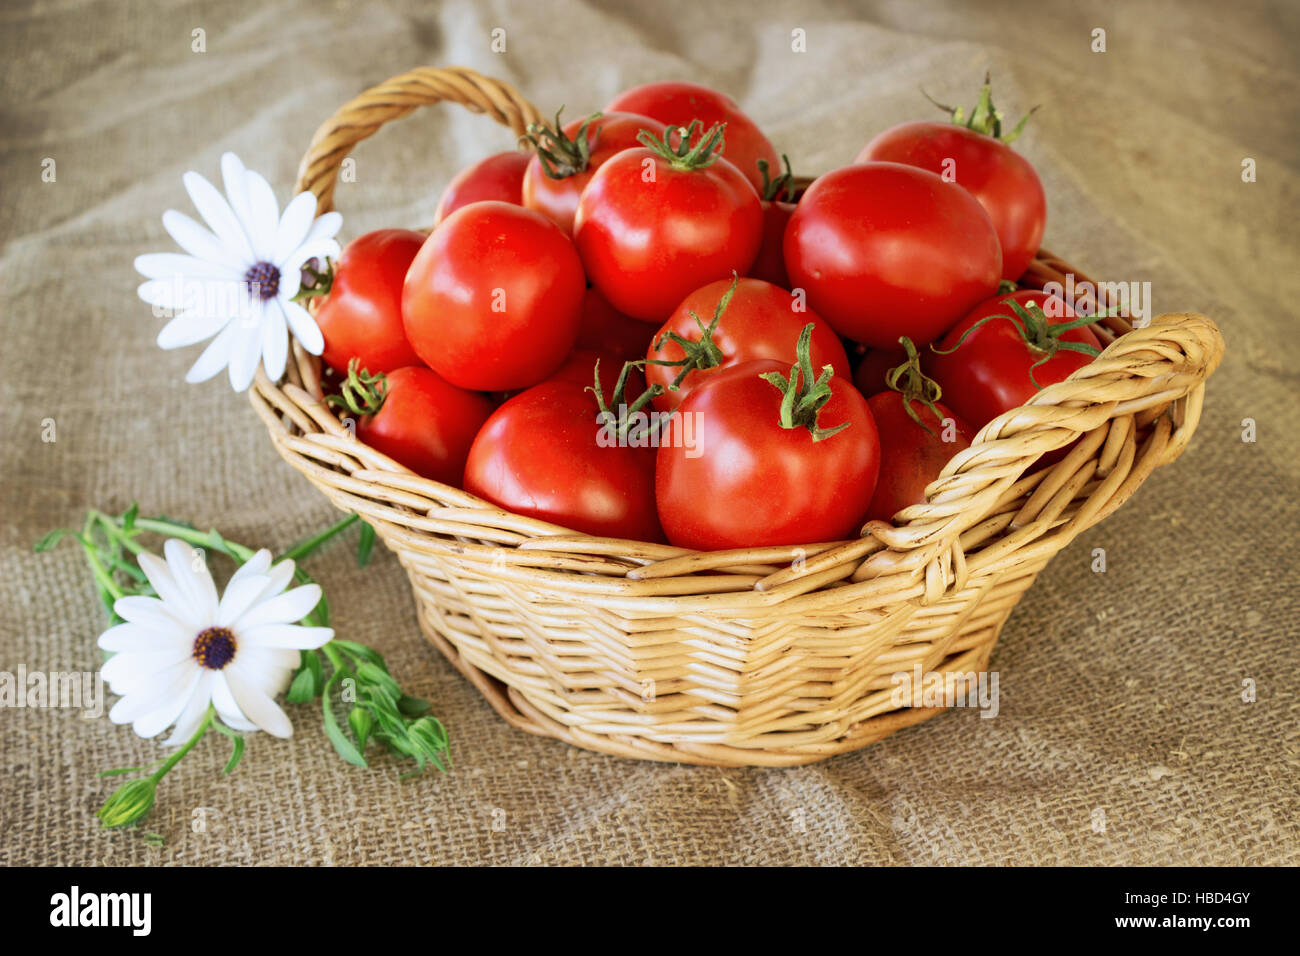 La vie encore d'un panier de tomates Banque D'Images